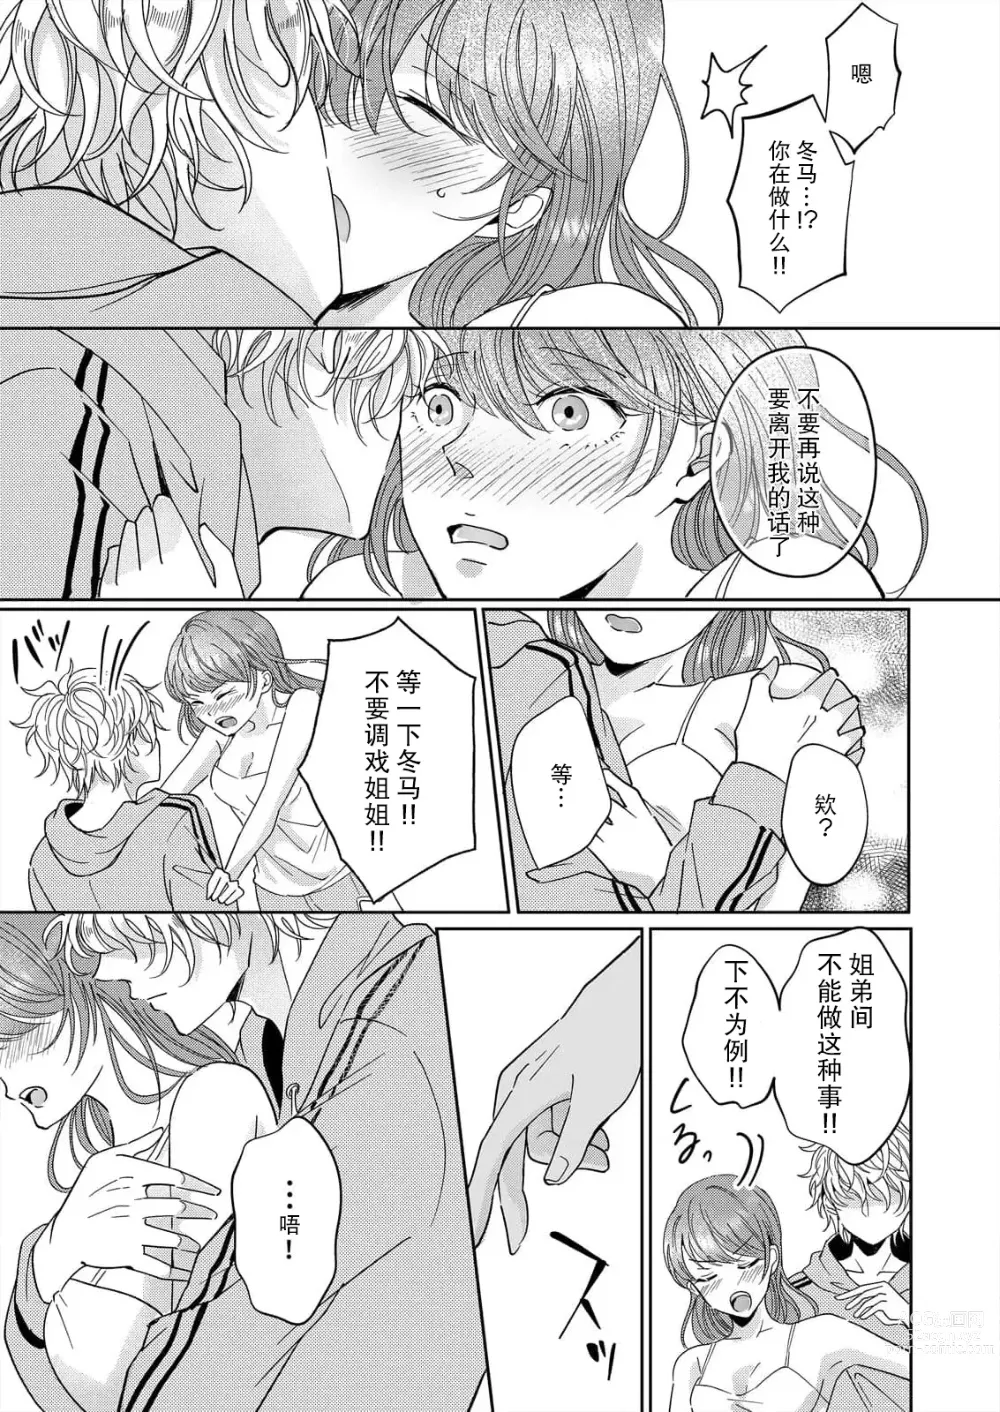 Page 9 of manga 姐弟时间结束~要做一些不能做的事情吗？1